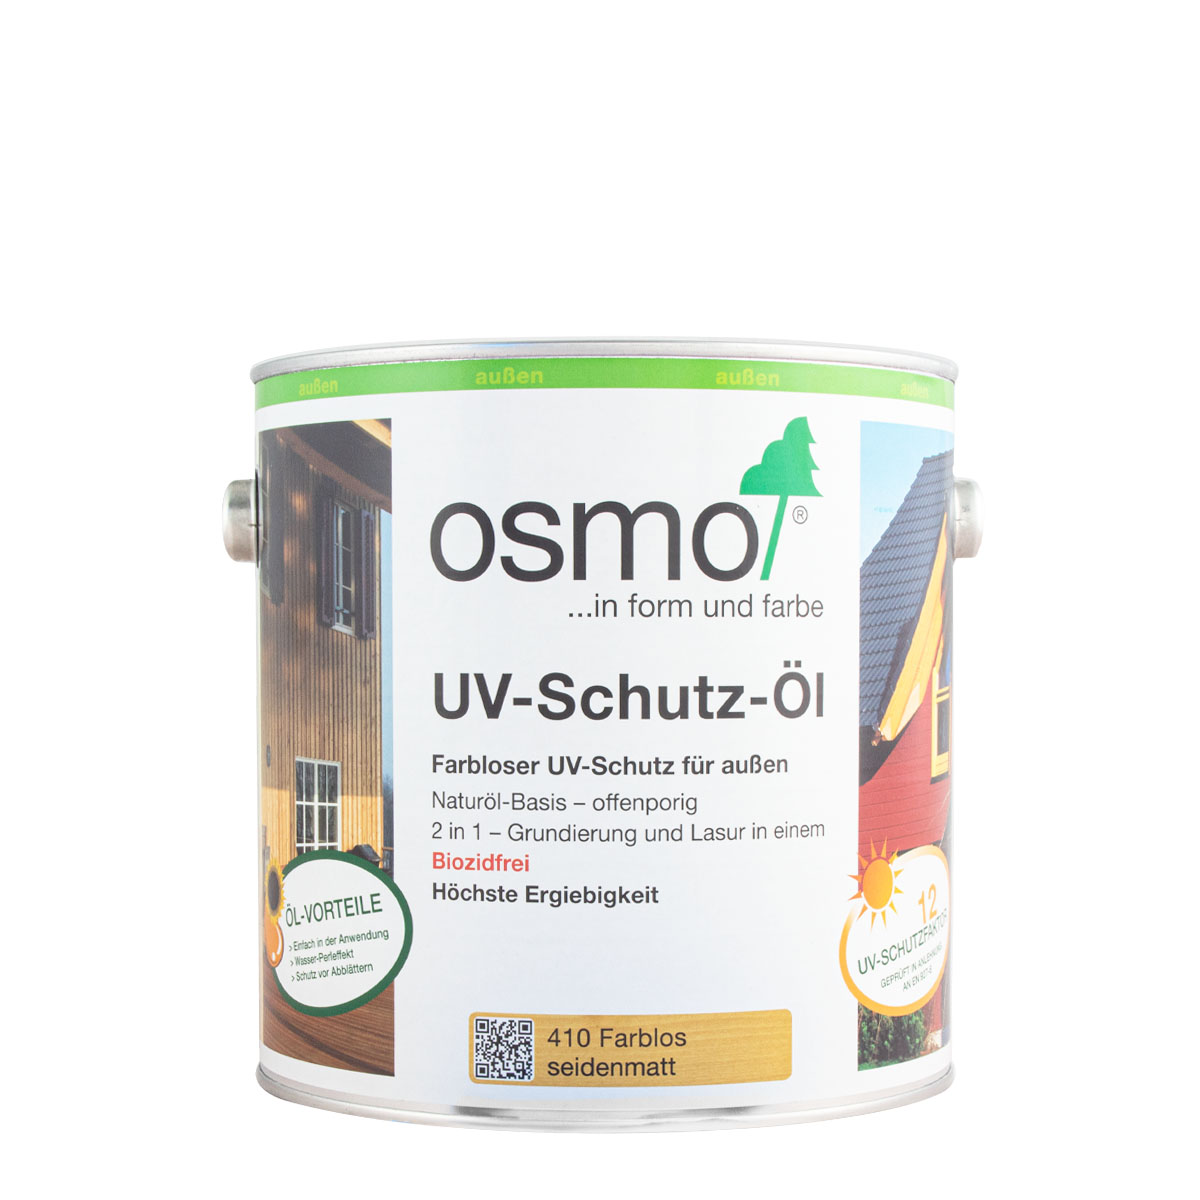 Osmo UV-Schutz-Öl 410 farblos 2,5L seidenmatt